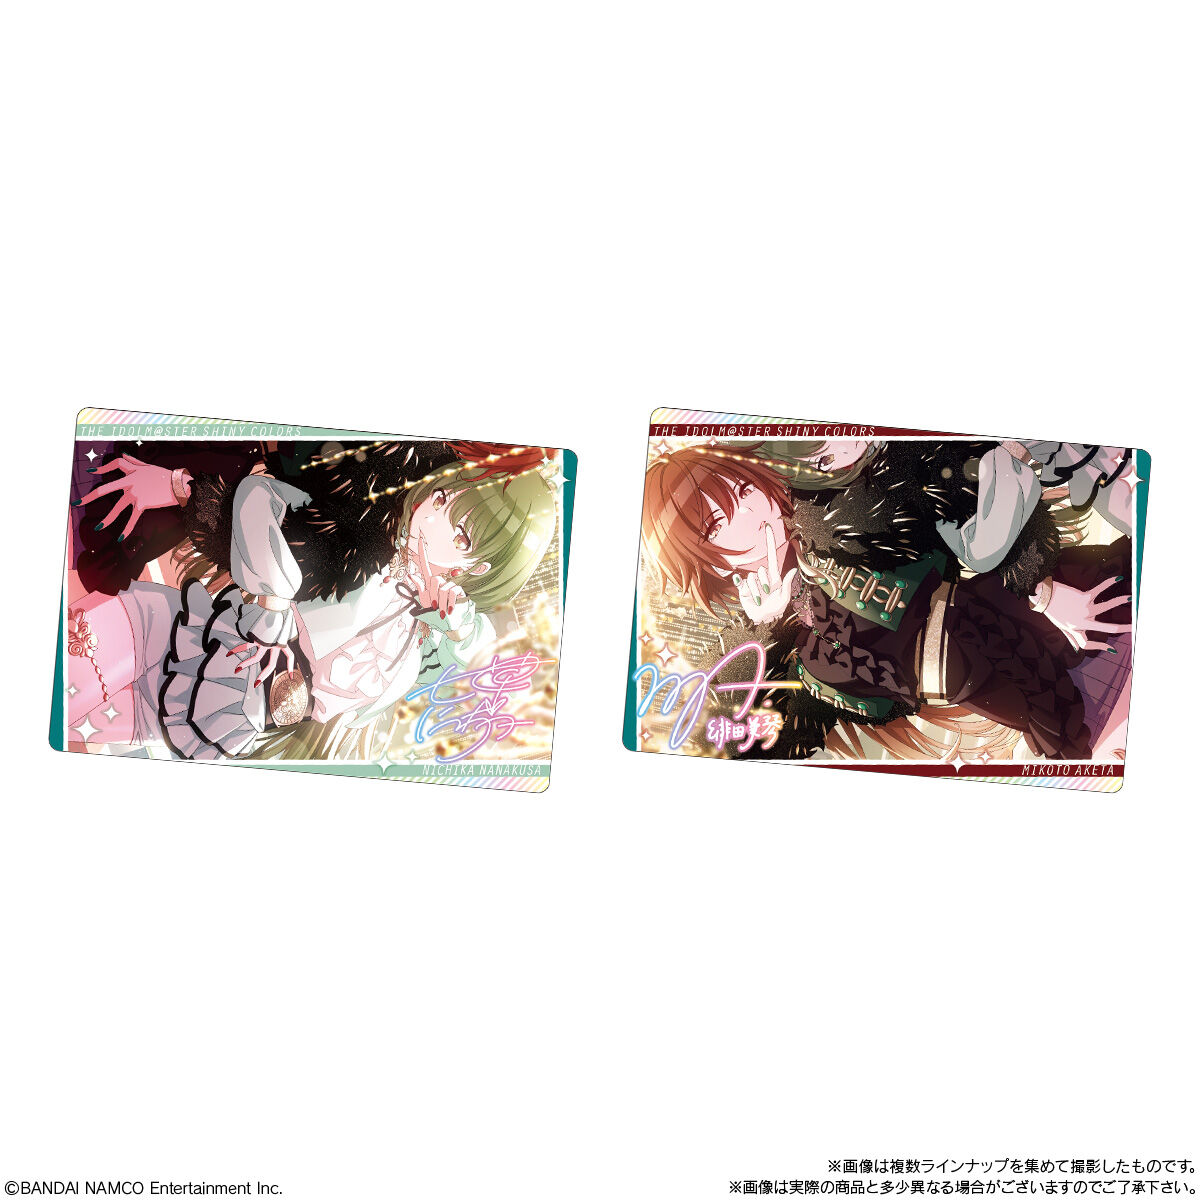 【食玩】シャニマス『アイドルマスター シャイニーカラーズ ウエハース』20個入りBOX-008